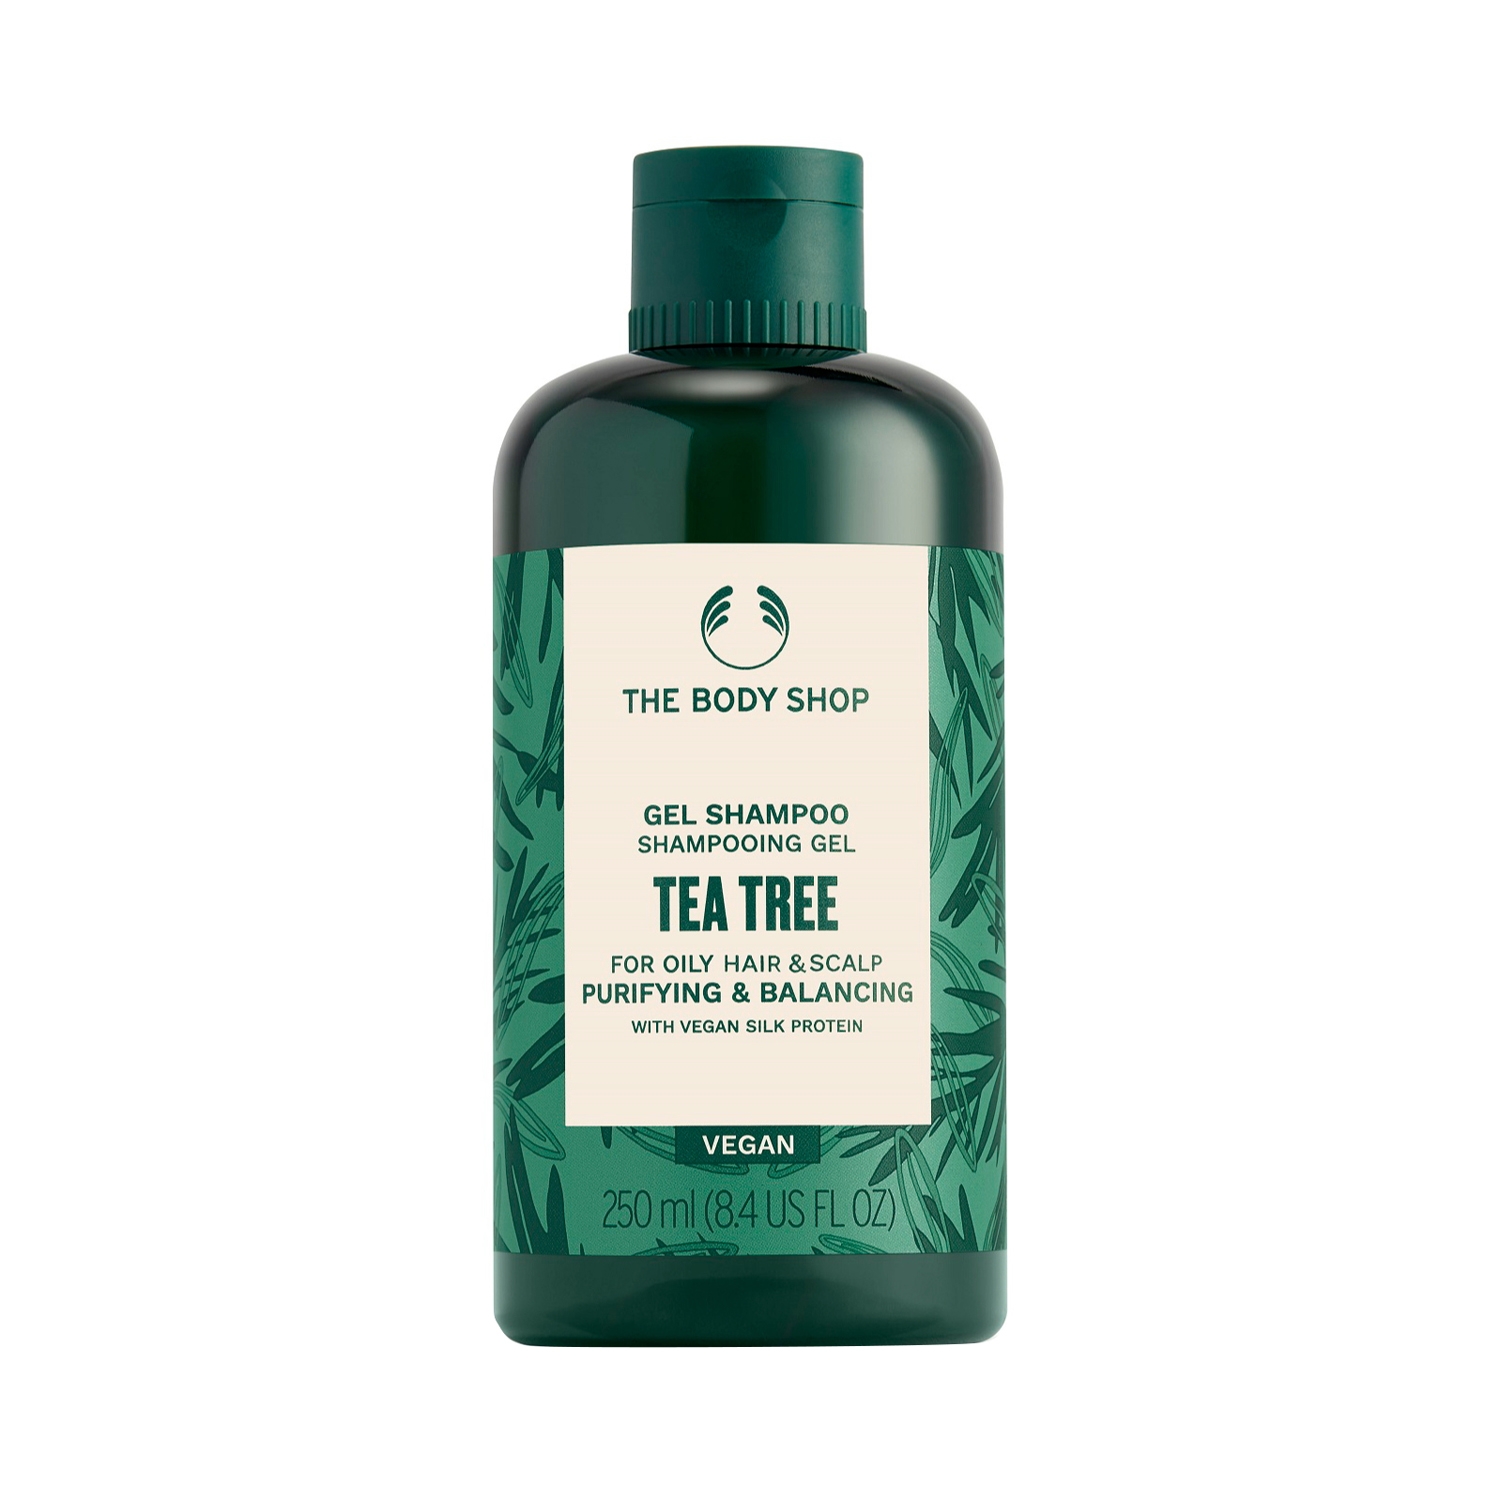 The Body Shop | The Body Shop Tea Tree Purifying & Balancing Shampoo (250ml)